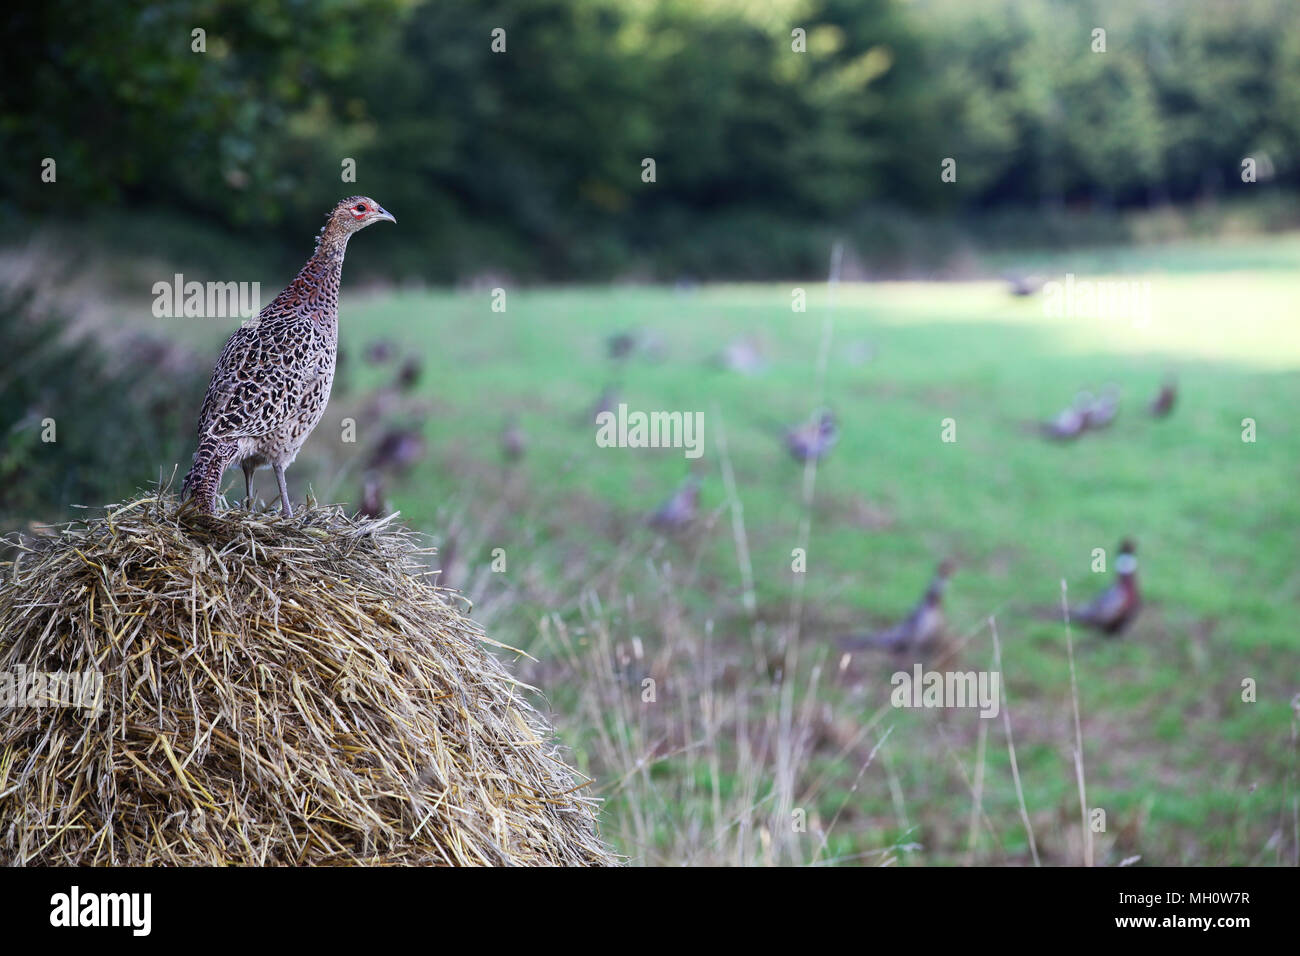 Weibliche Fasan Phasianus colchicus [] stehen auf staw Ballen mit Feld voll von Fasanen unscharf im Hintergrund Stockfoto